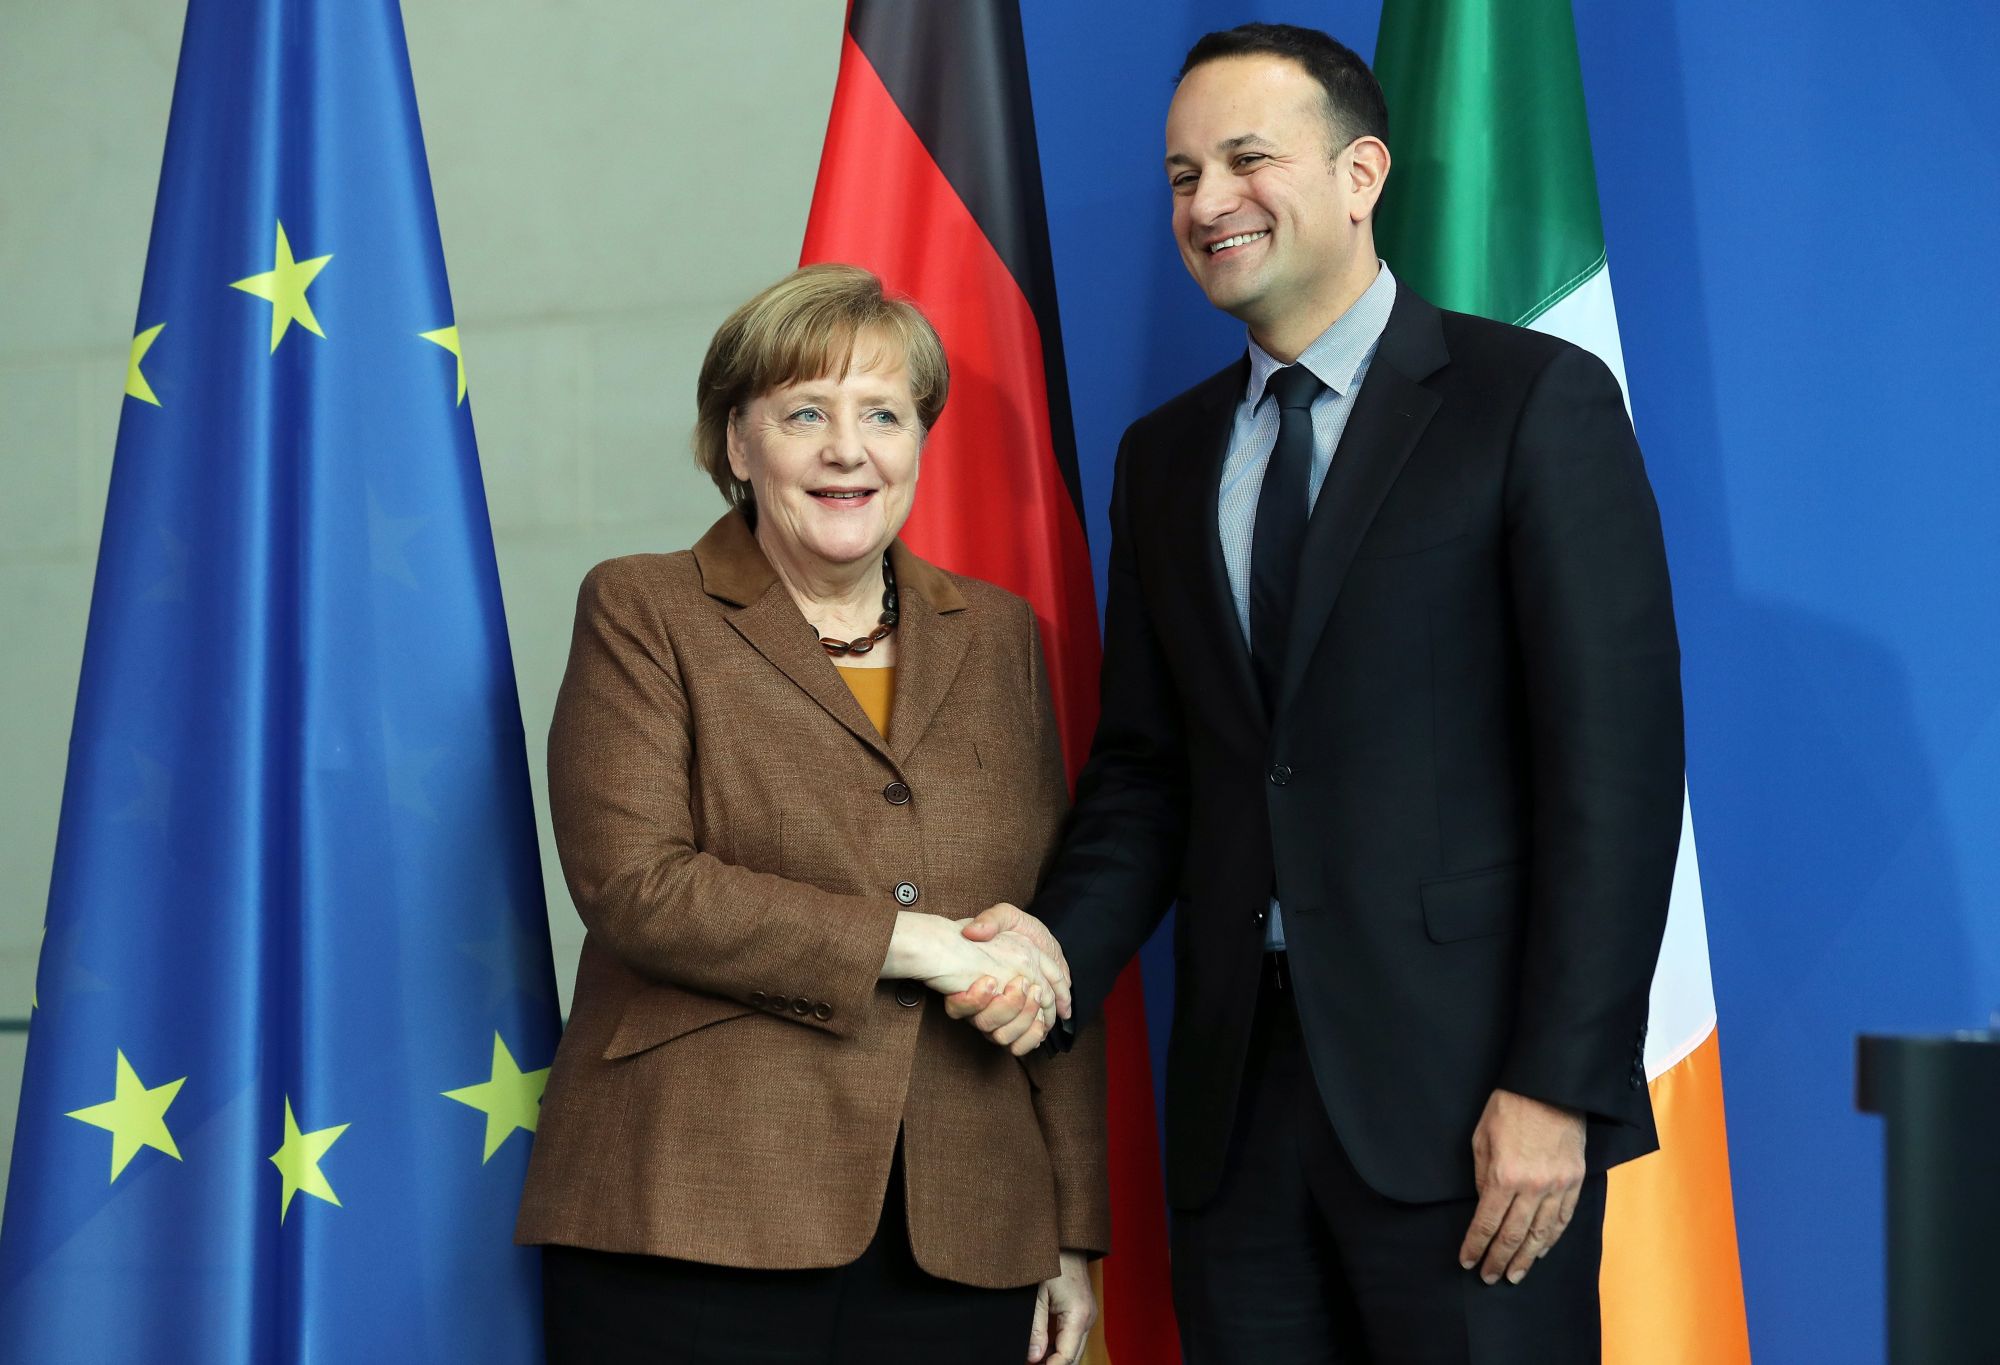 Angela Merkel német kancellár (b) és Leo Varadkar ír miniszterelnök kezet fog a berlini kancellári hivatalban tartott sajtótájékoztatójuk végén 2018. március 20-án. (MTI/EPA/Felipe Trueba)